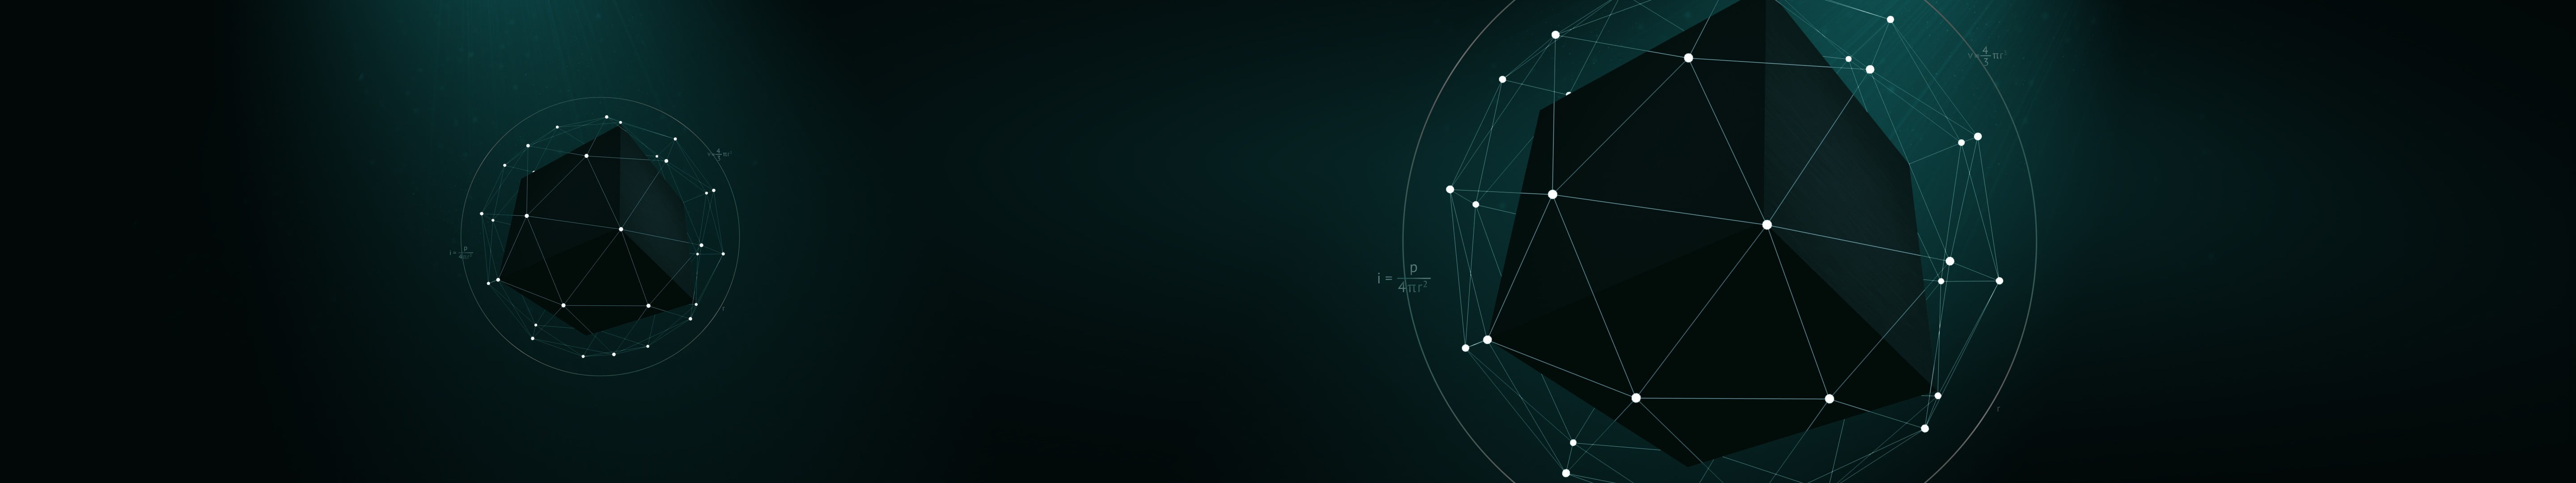 star constellation digital wallpaper, black cube illustration